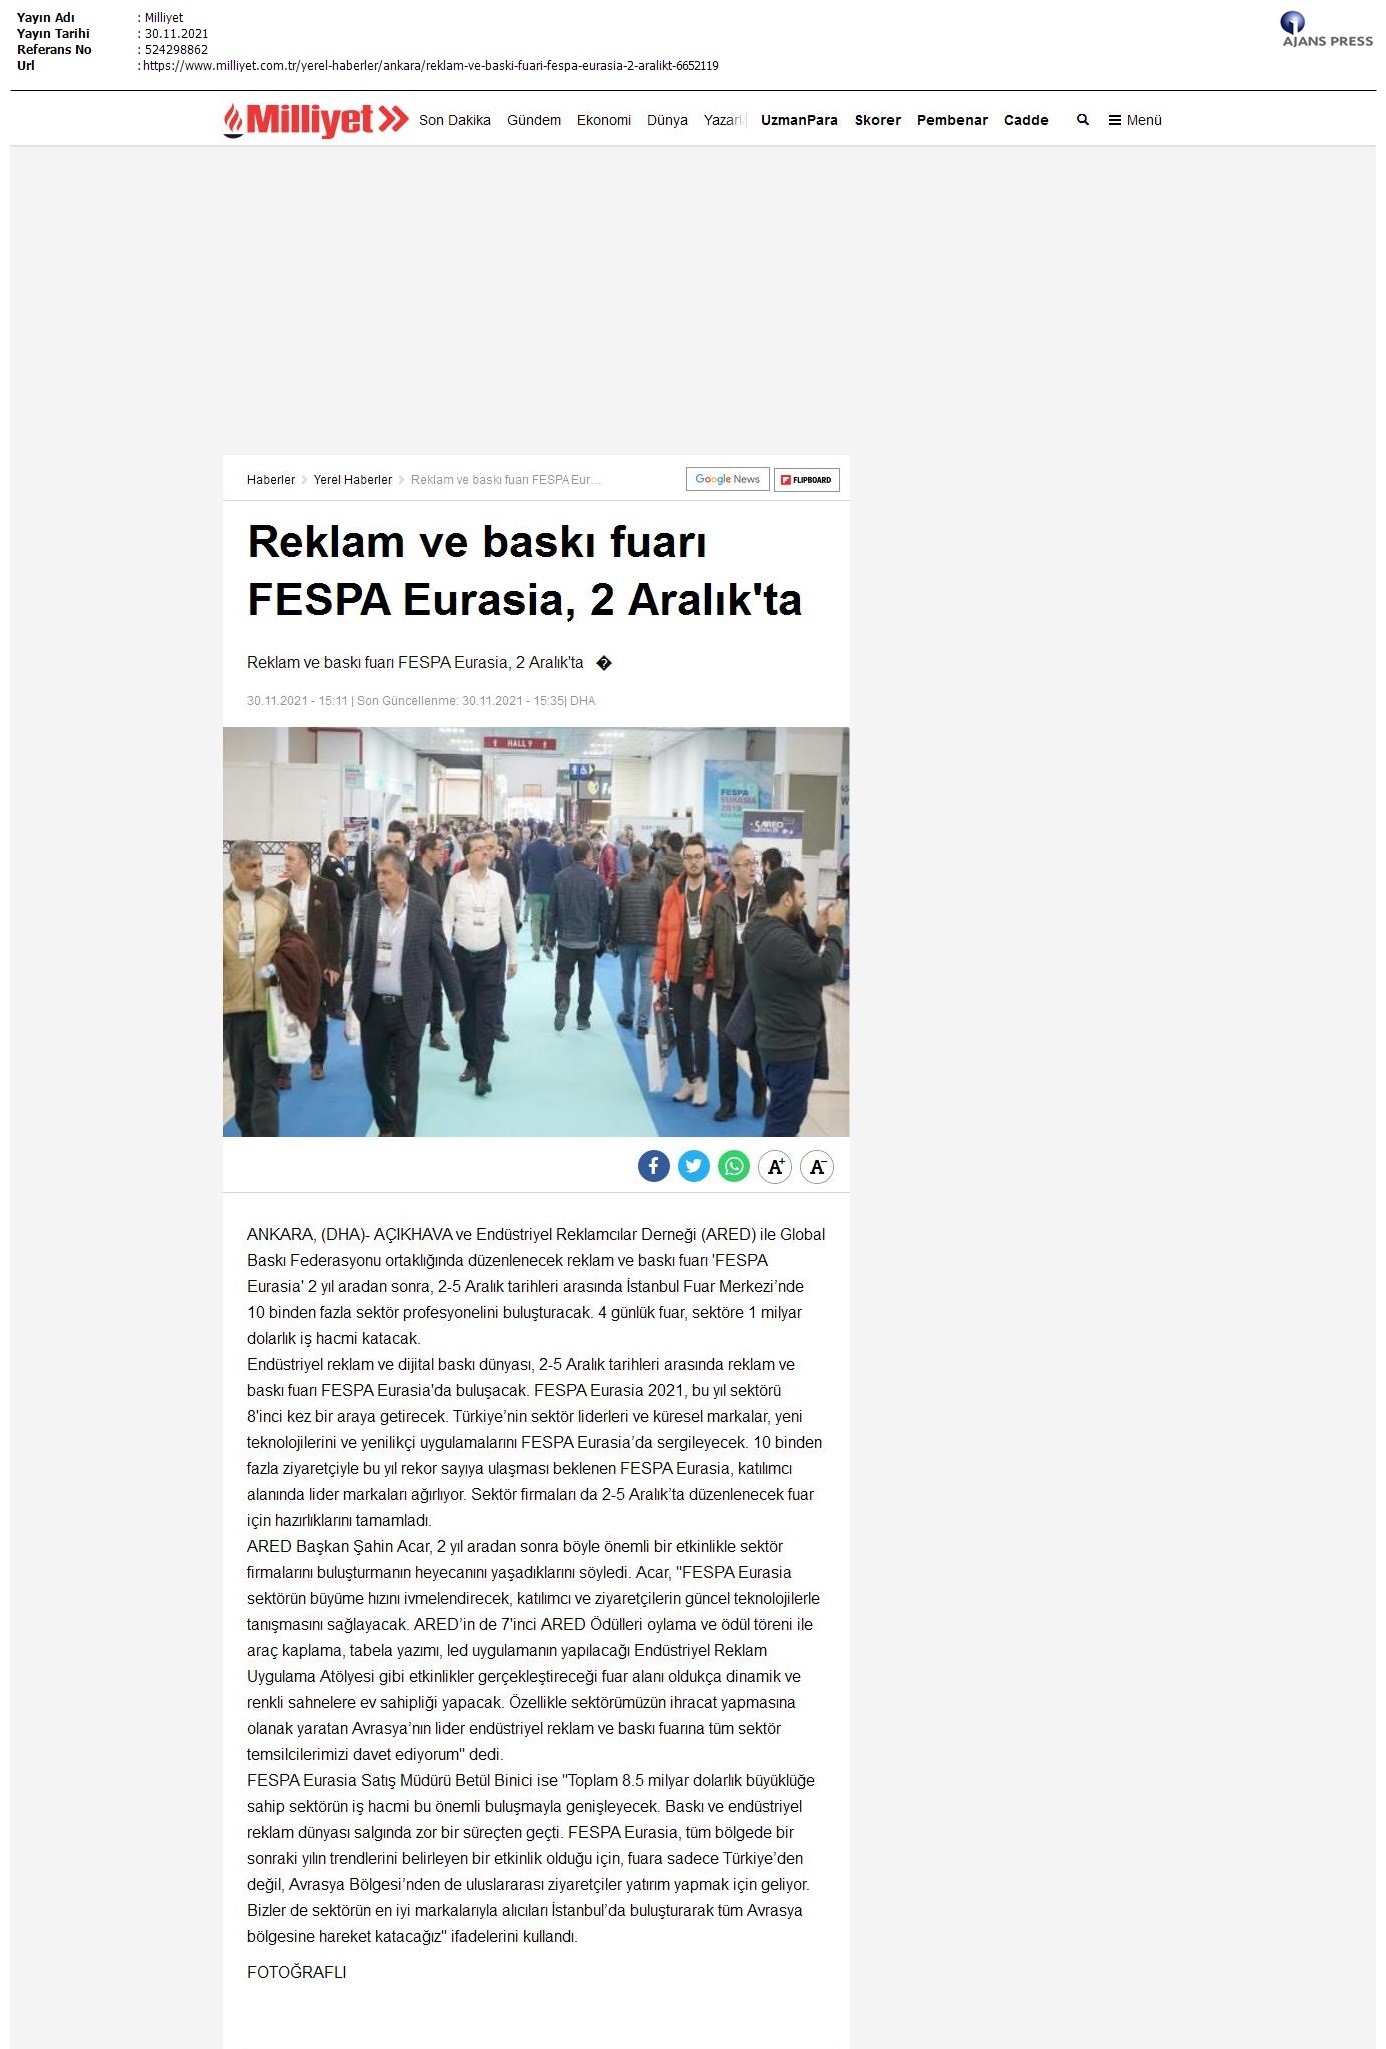 Reklam ve baskı fuarı FESPA Eurasia, 2 Aralık'ta